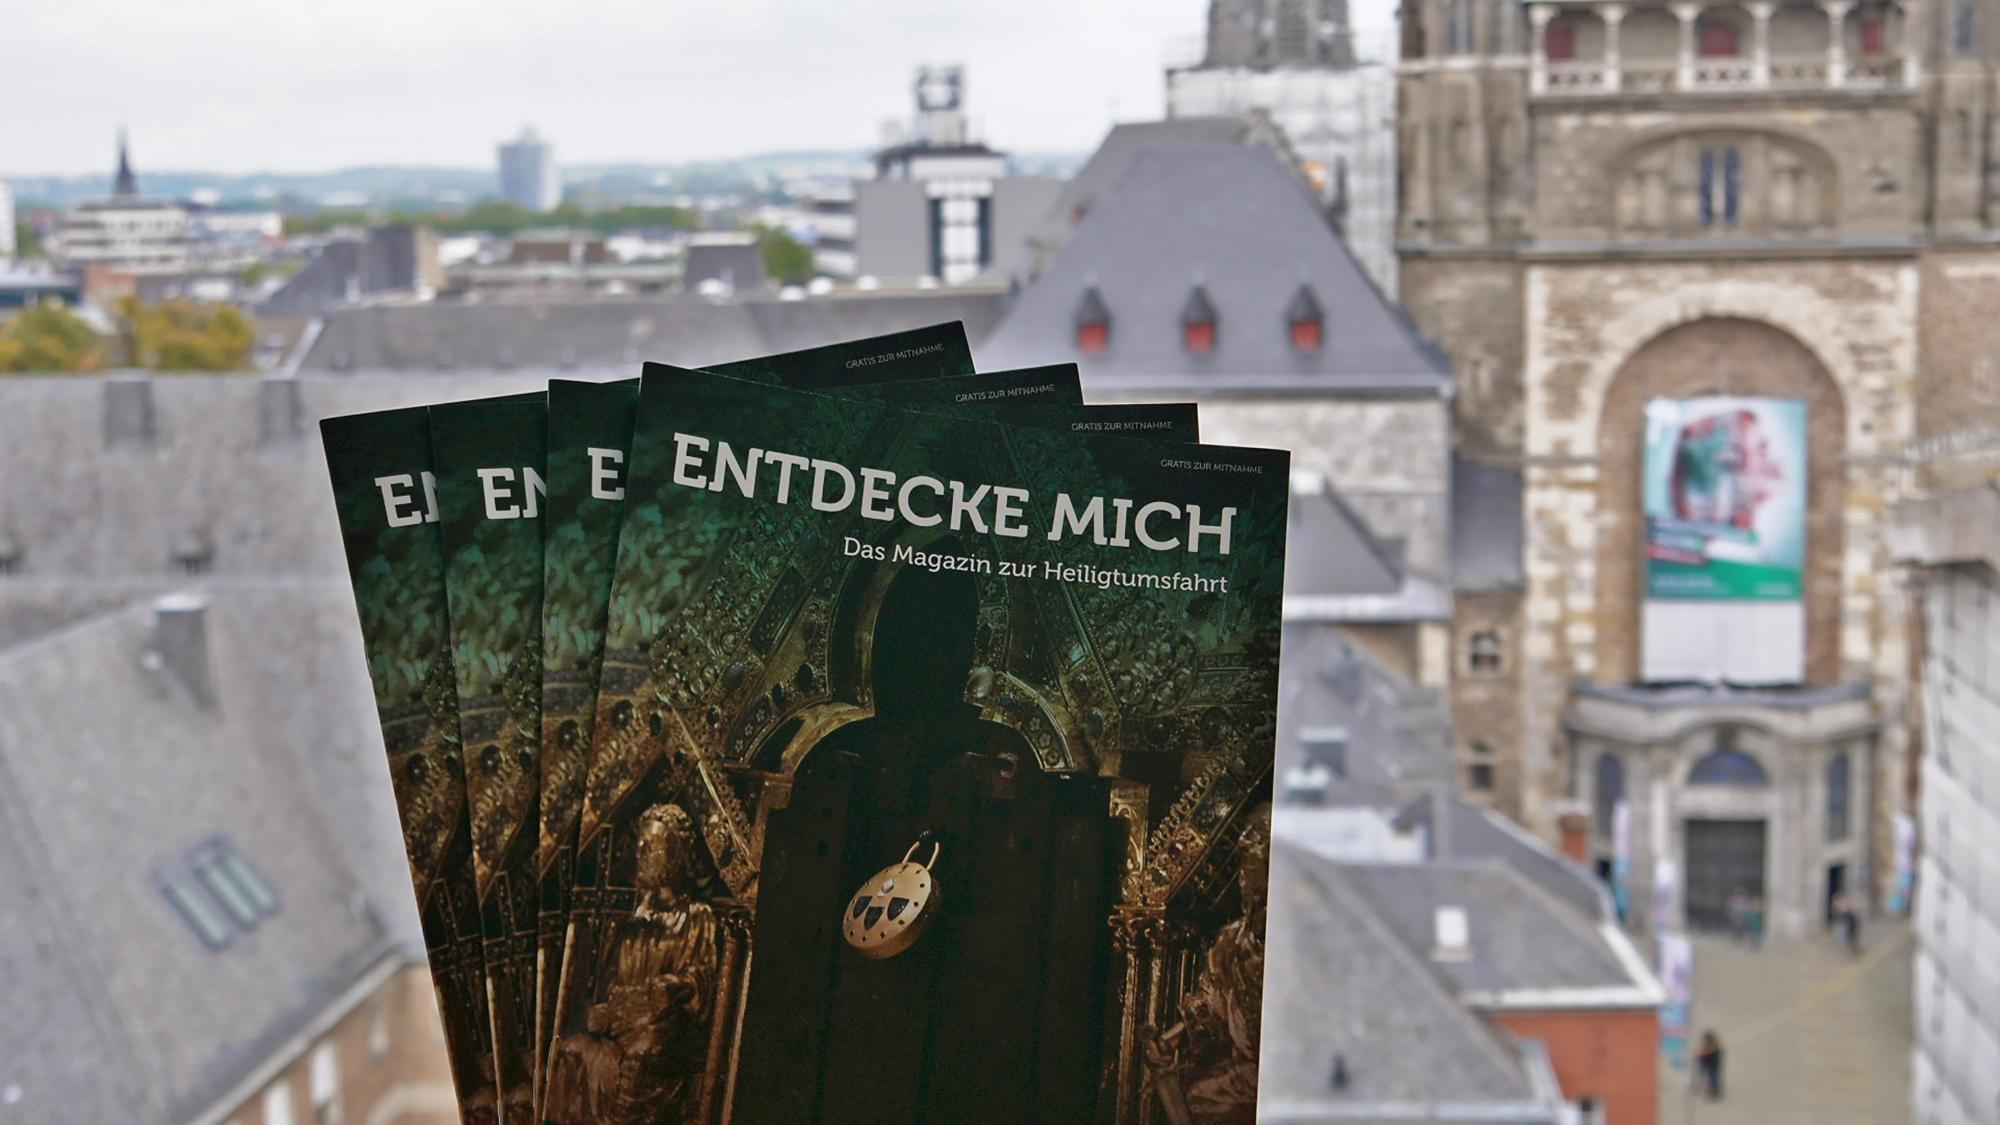 Ein ganzes Magazin rund um die Heiligtumsfahrt Aachen: „Entdecke mich“- lautet der Titel.